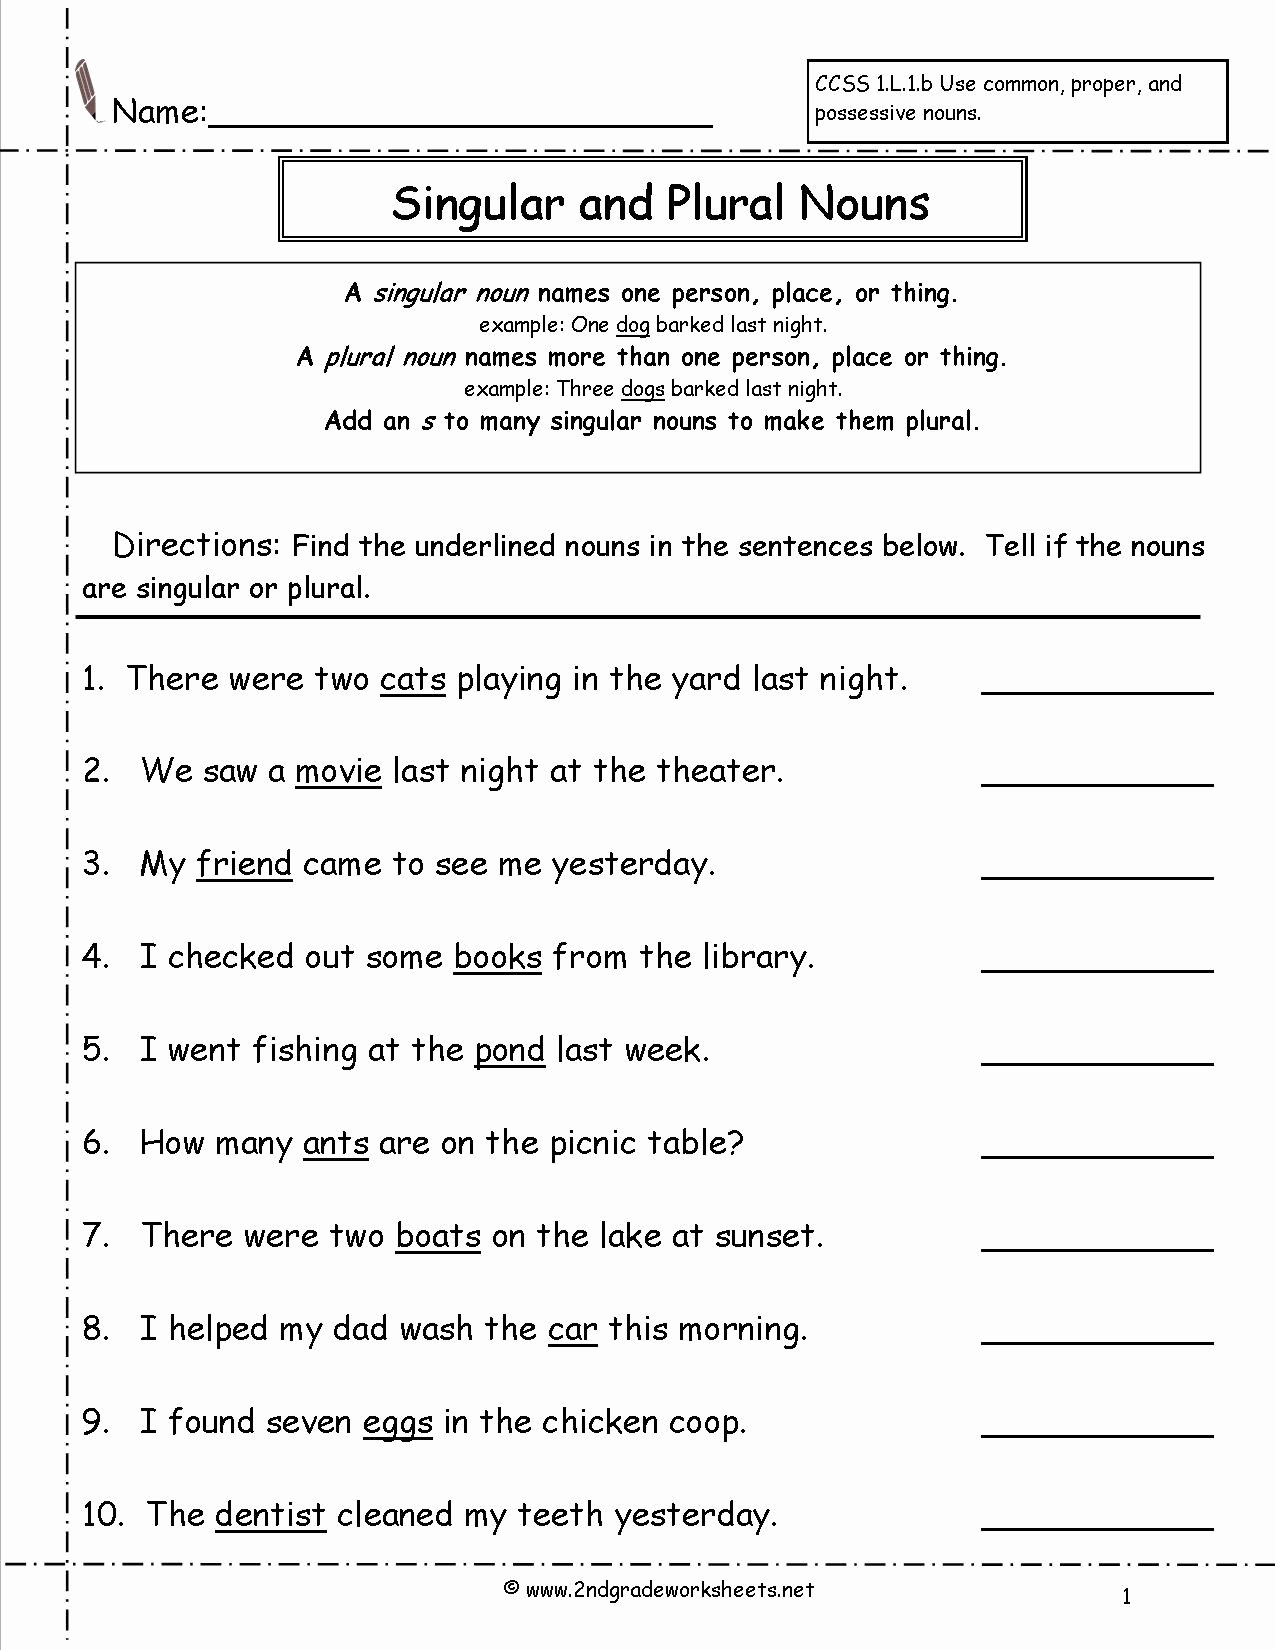 Possessive Pronouns Worksheet 2nd Grade Unique 20 Possessive Noun Worksheet 2nd Grade